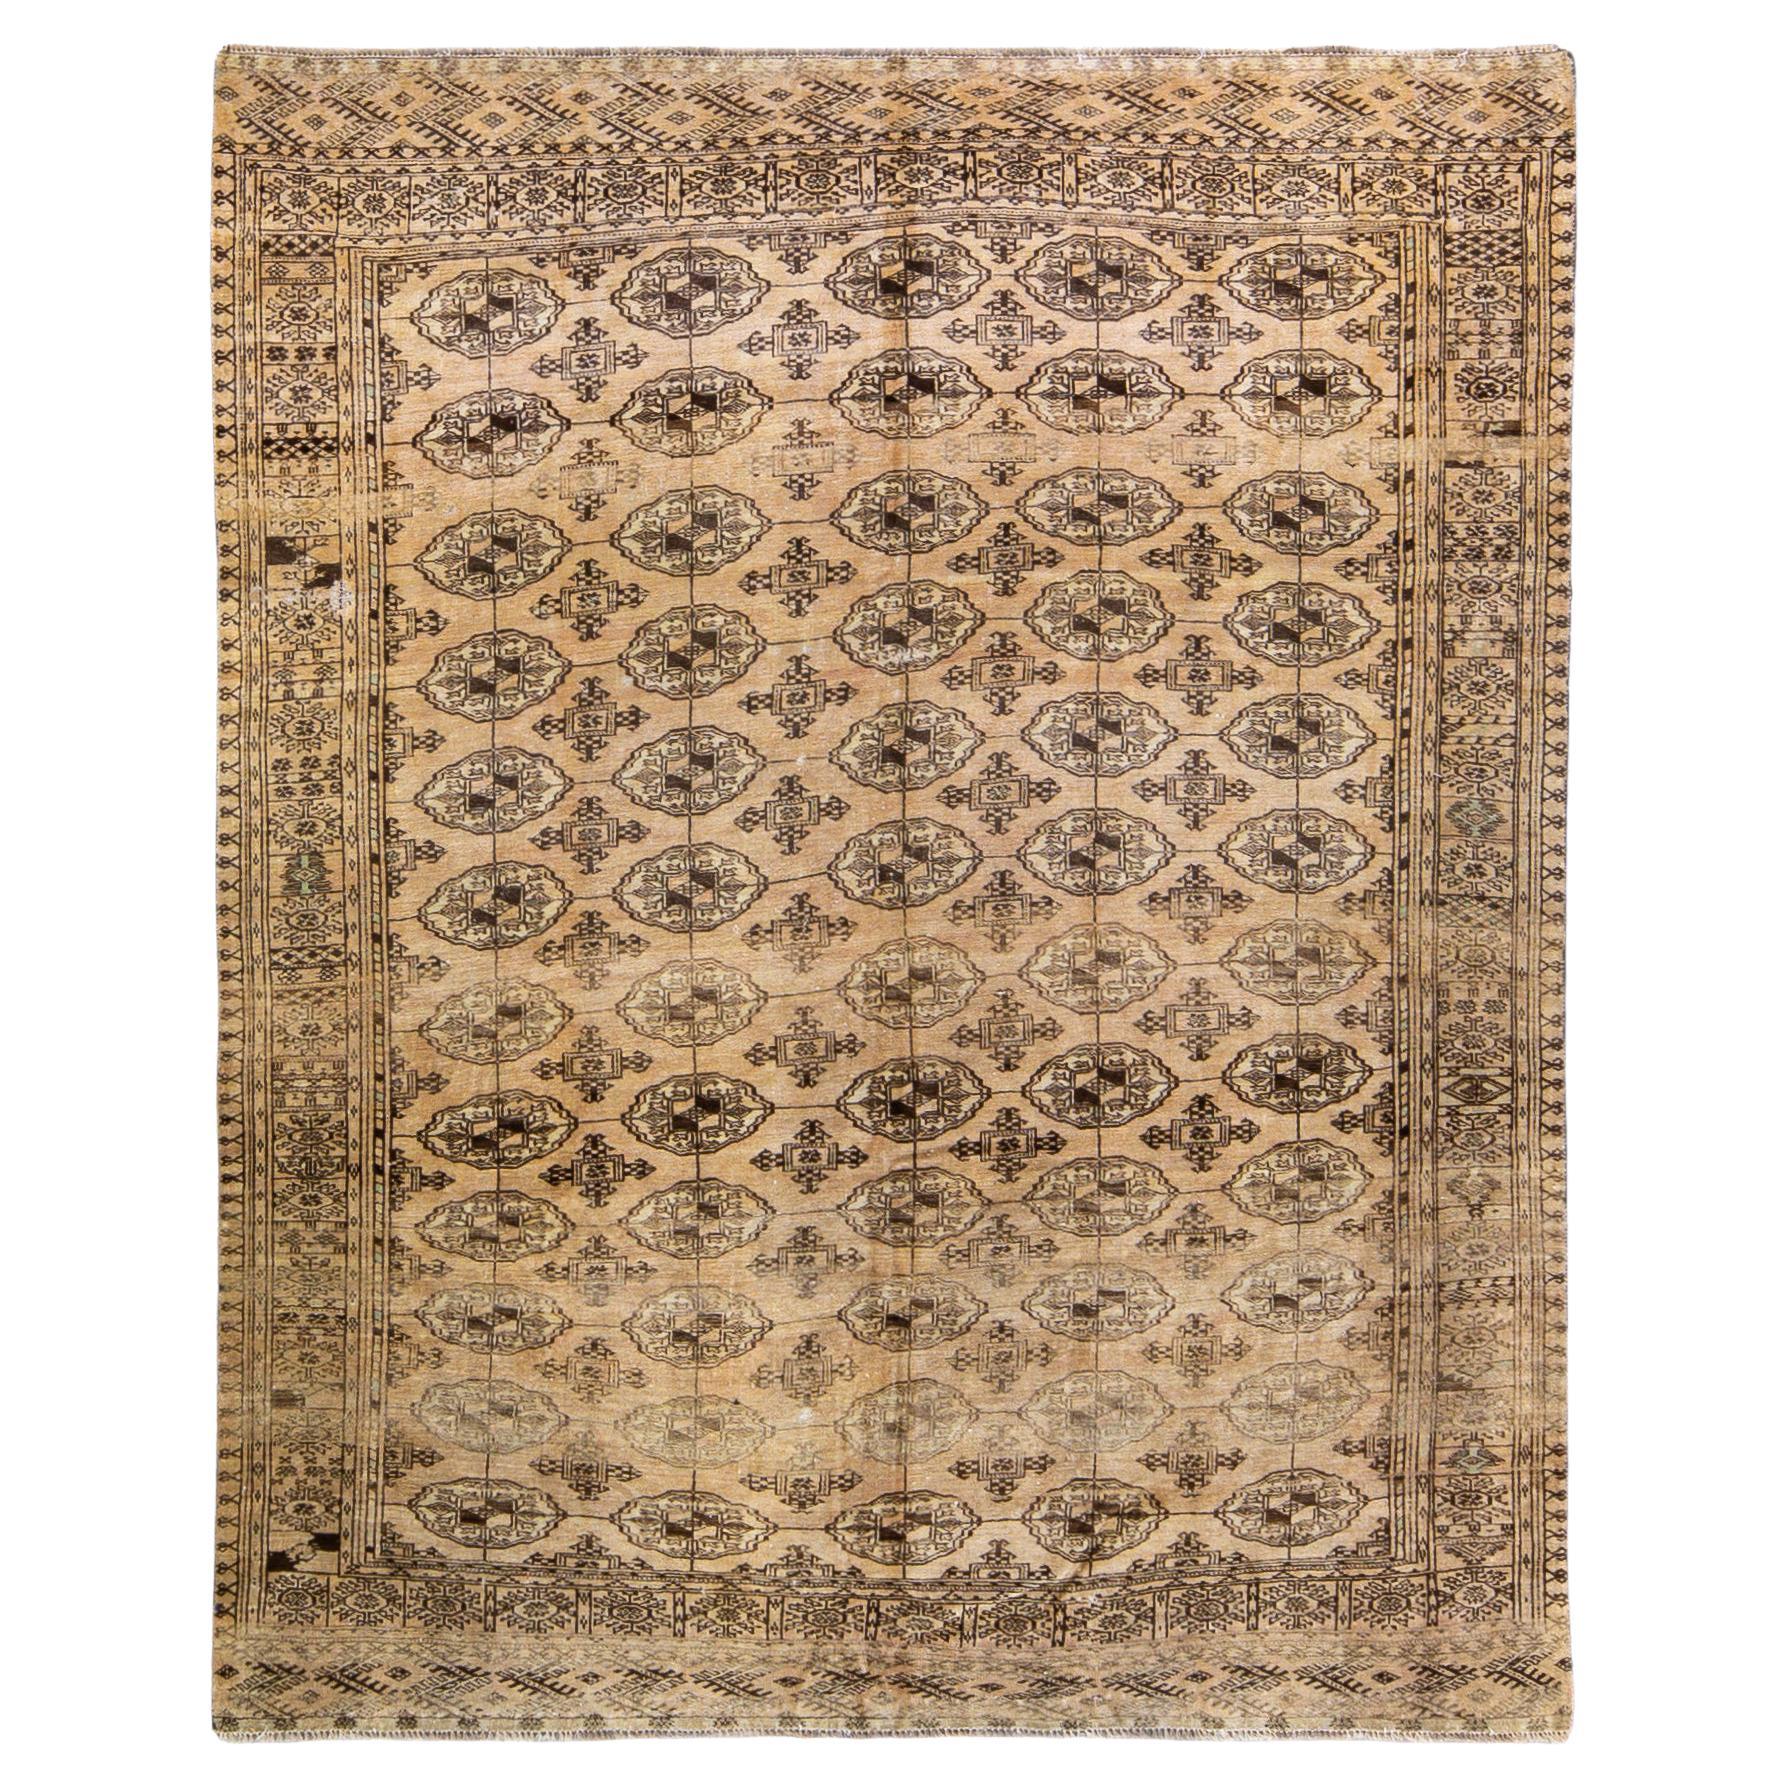 Tapis turkmène ancien en laine beige à motifs géométriques fait à la main